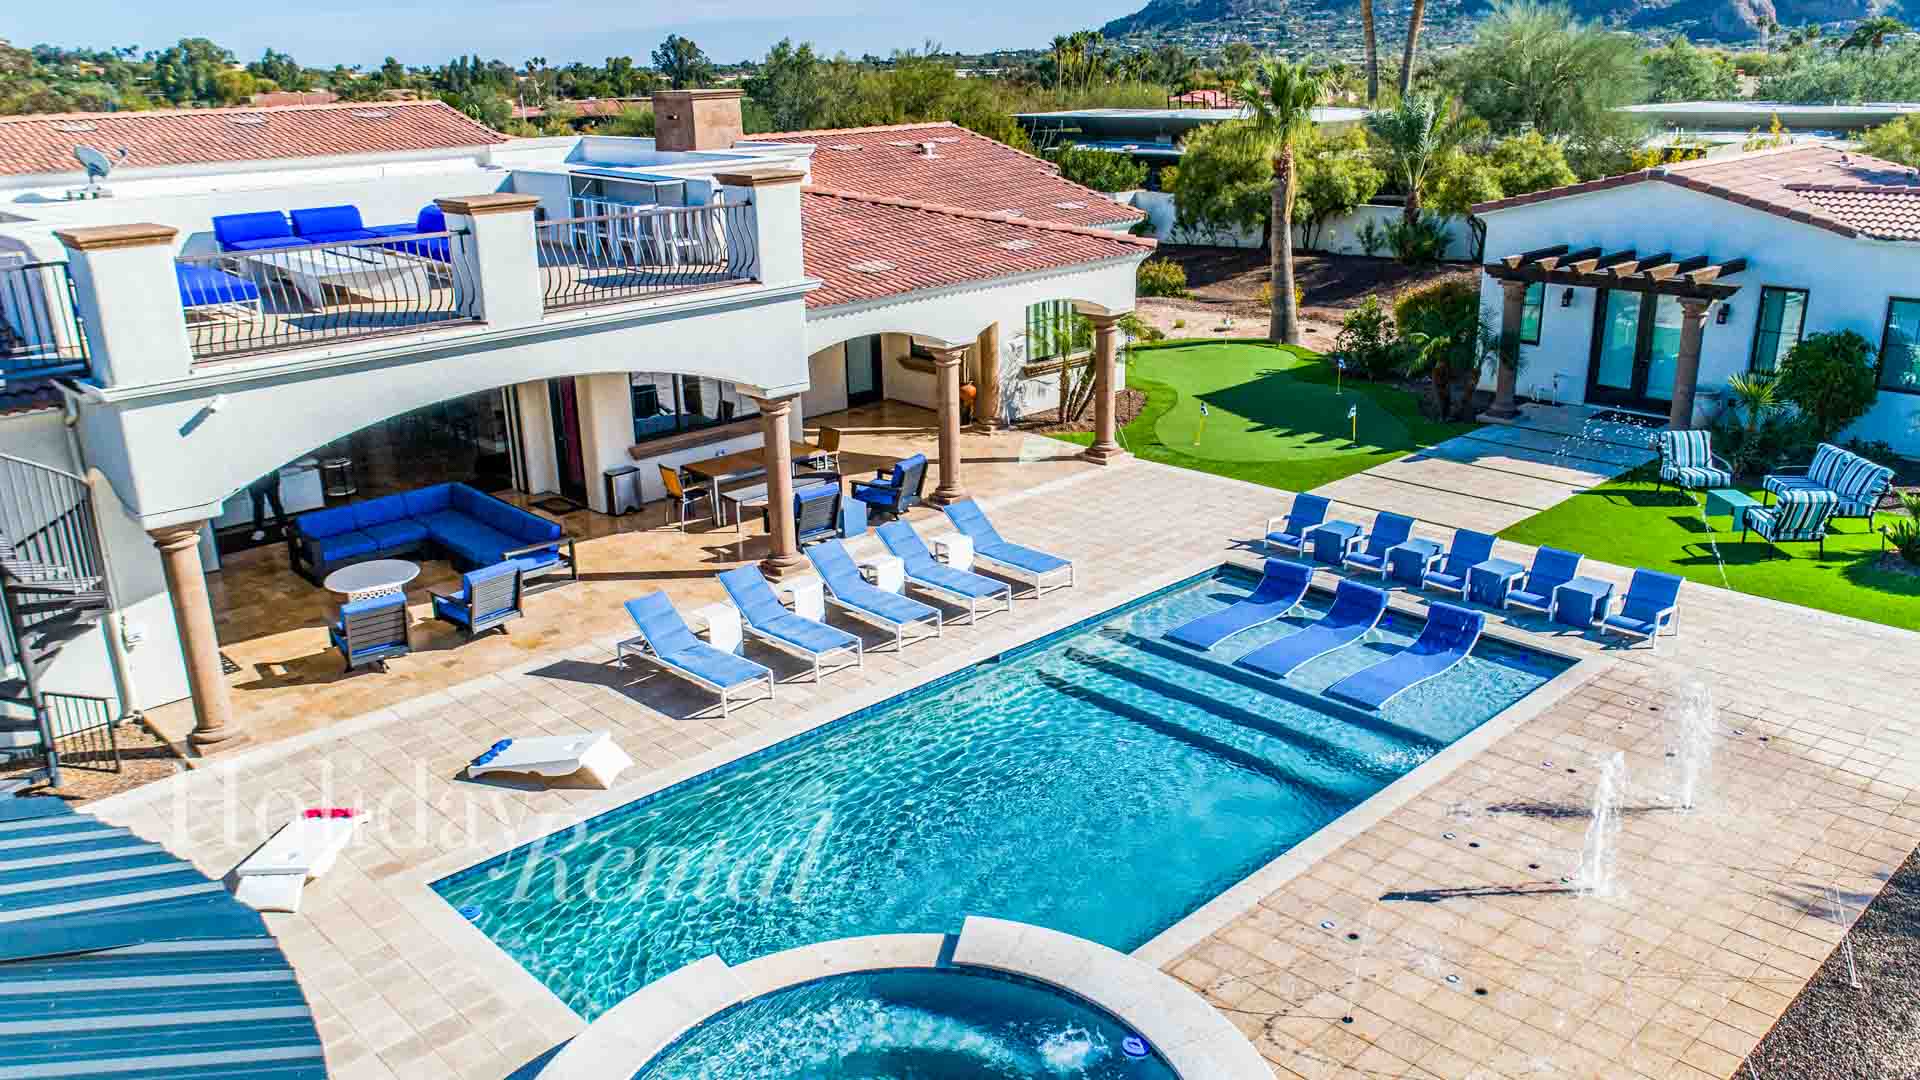 luxury vacation rental pool and splash pad